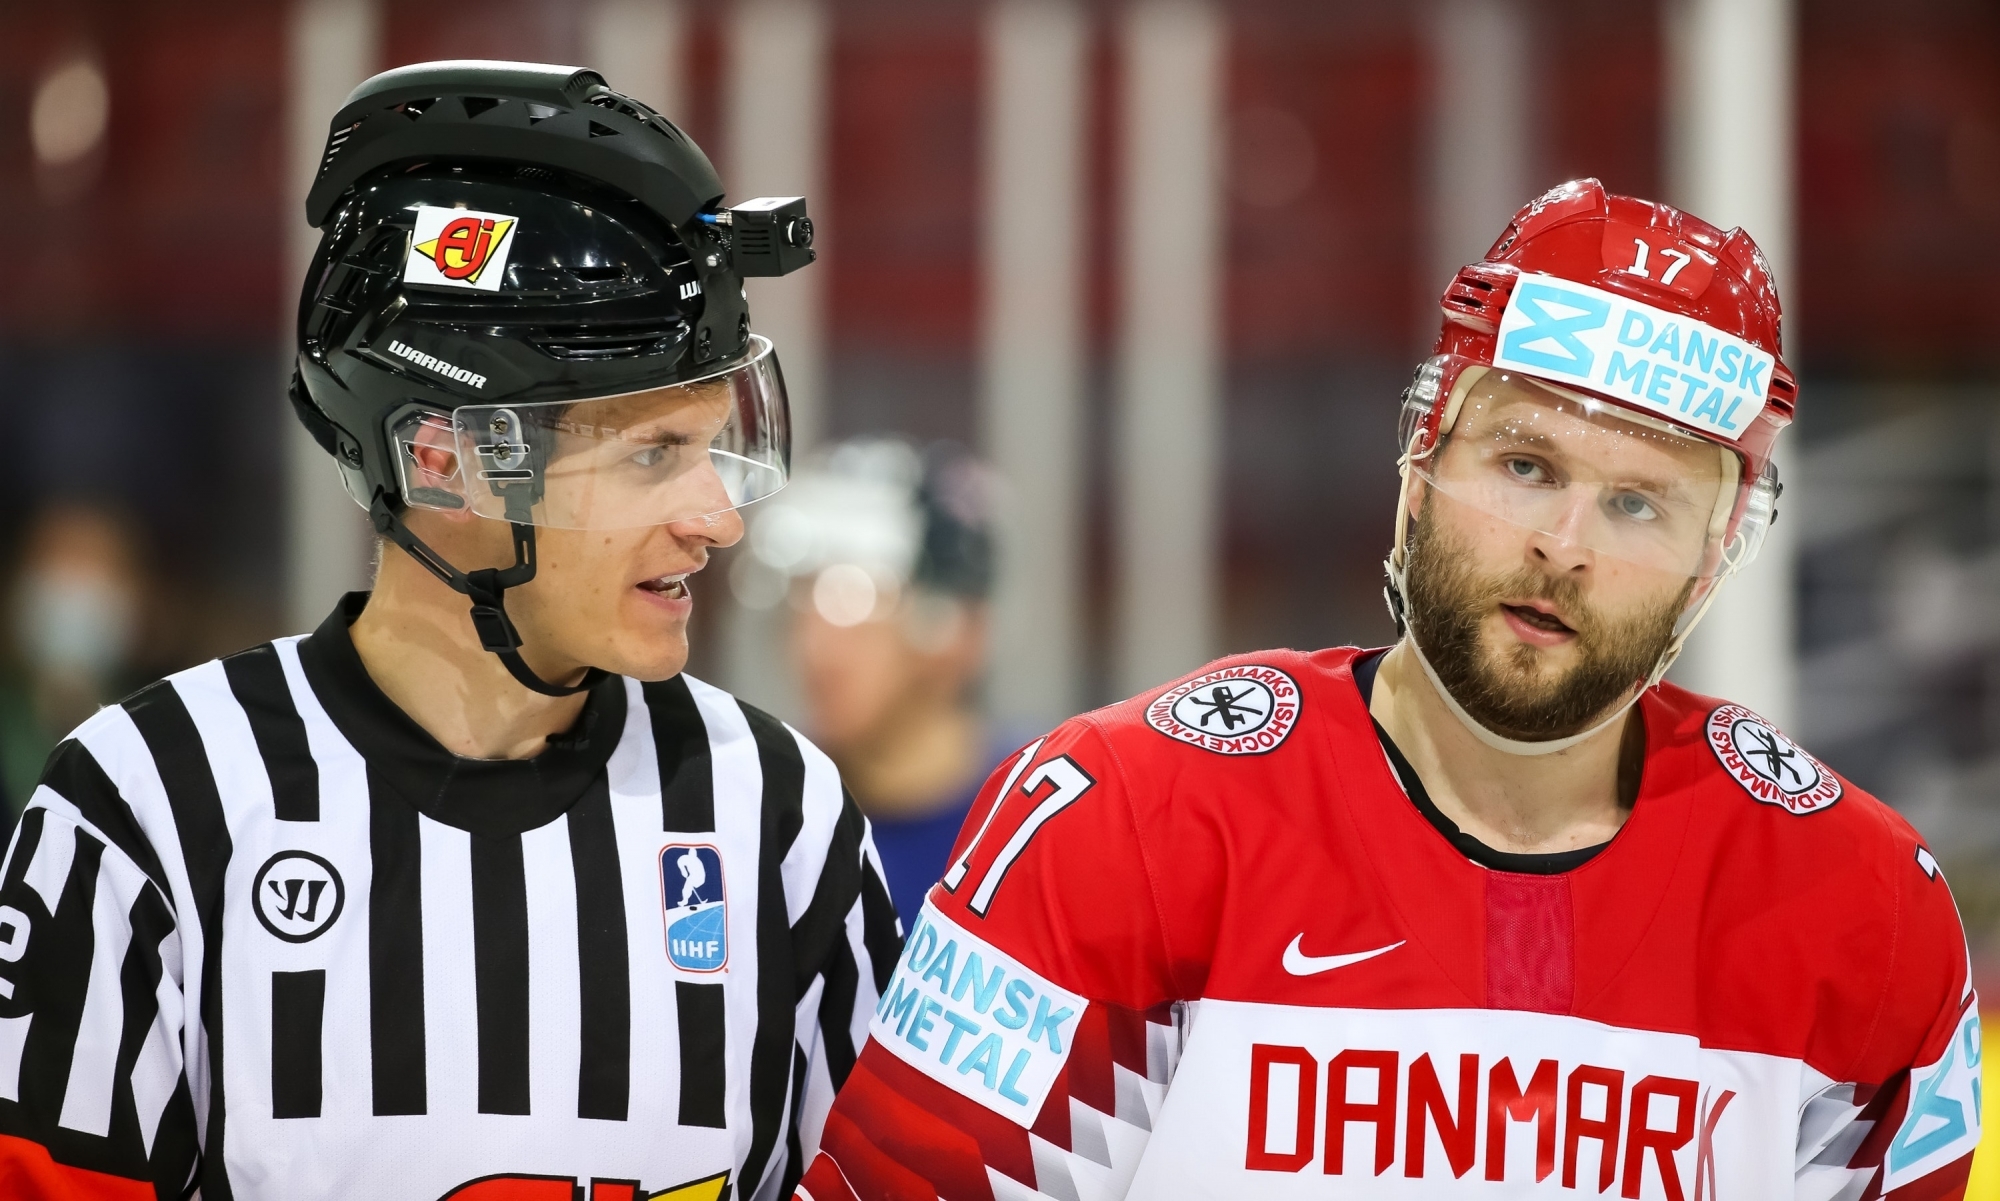 Michael Tscherrig s’est retrouvé sur la glace de Riga aux côtés des stars du hockey mondial.